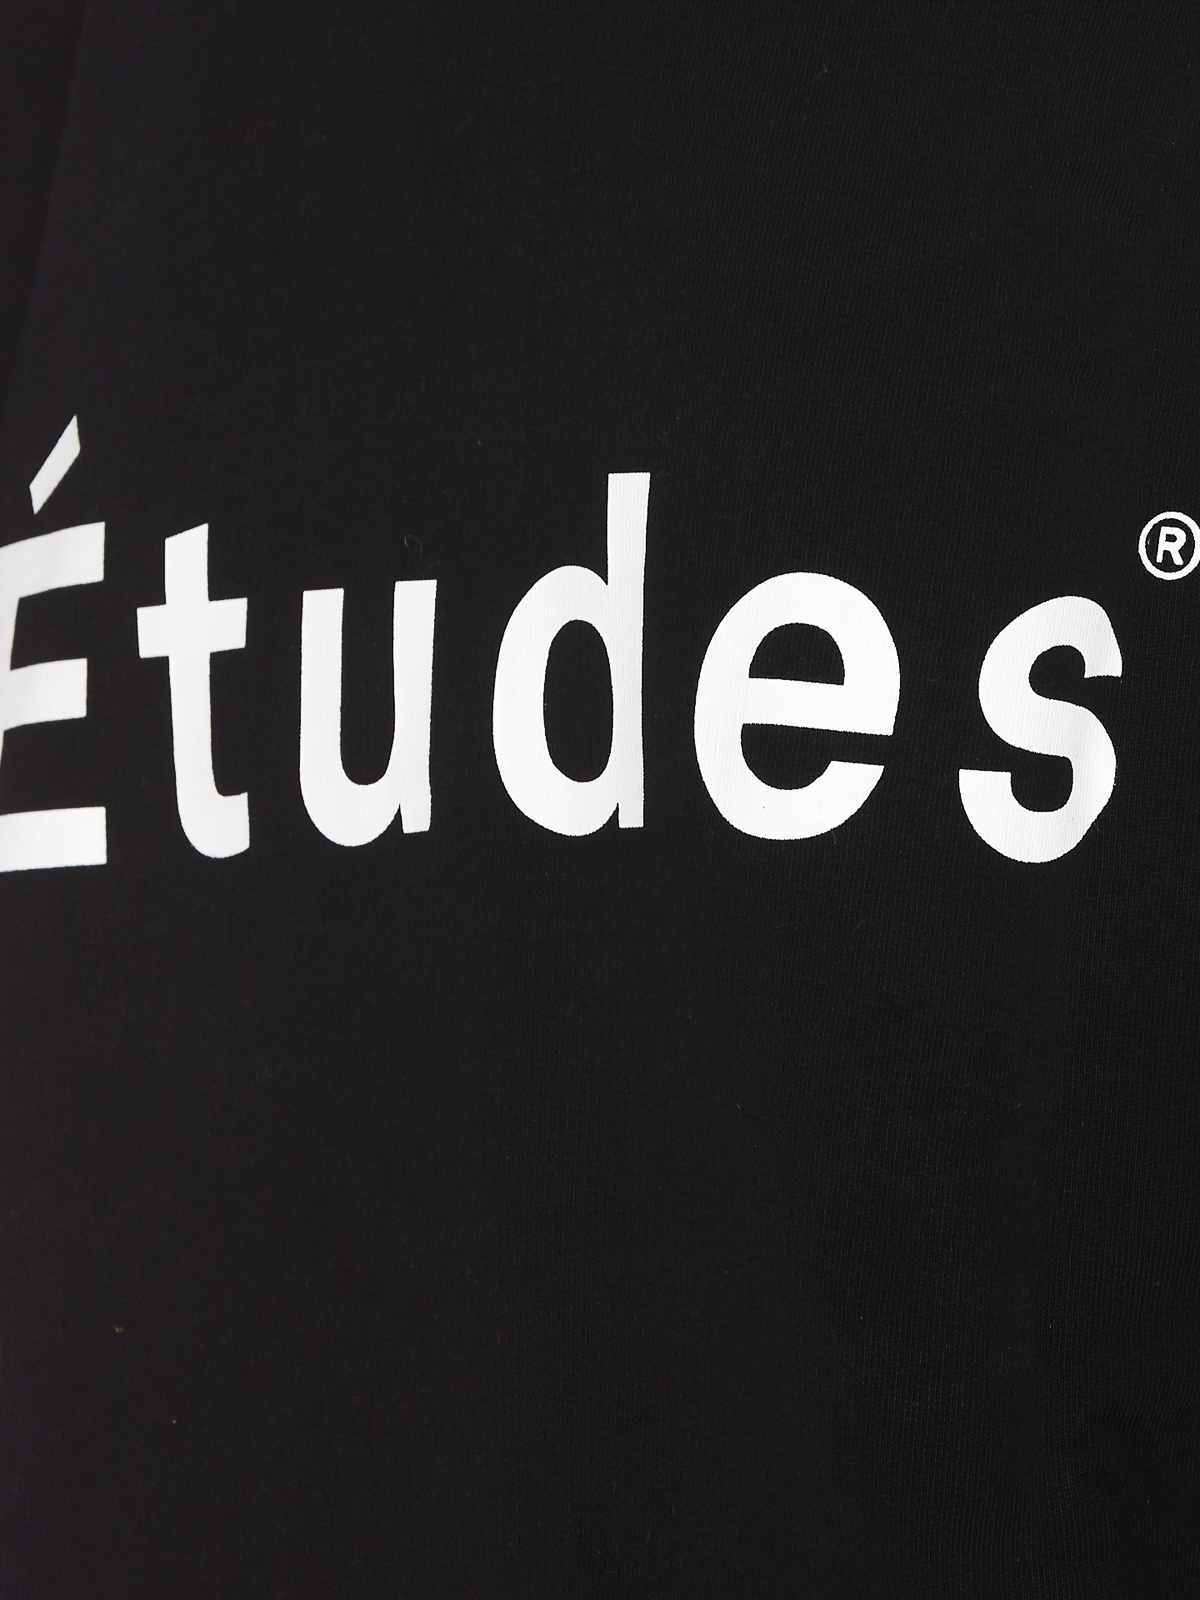 Shop Etudes Studio Sudadera - Negro In Black